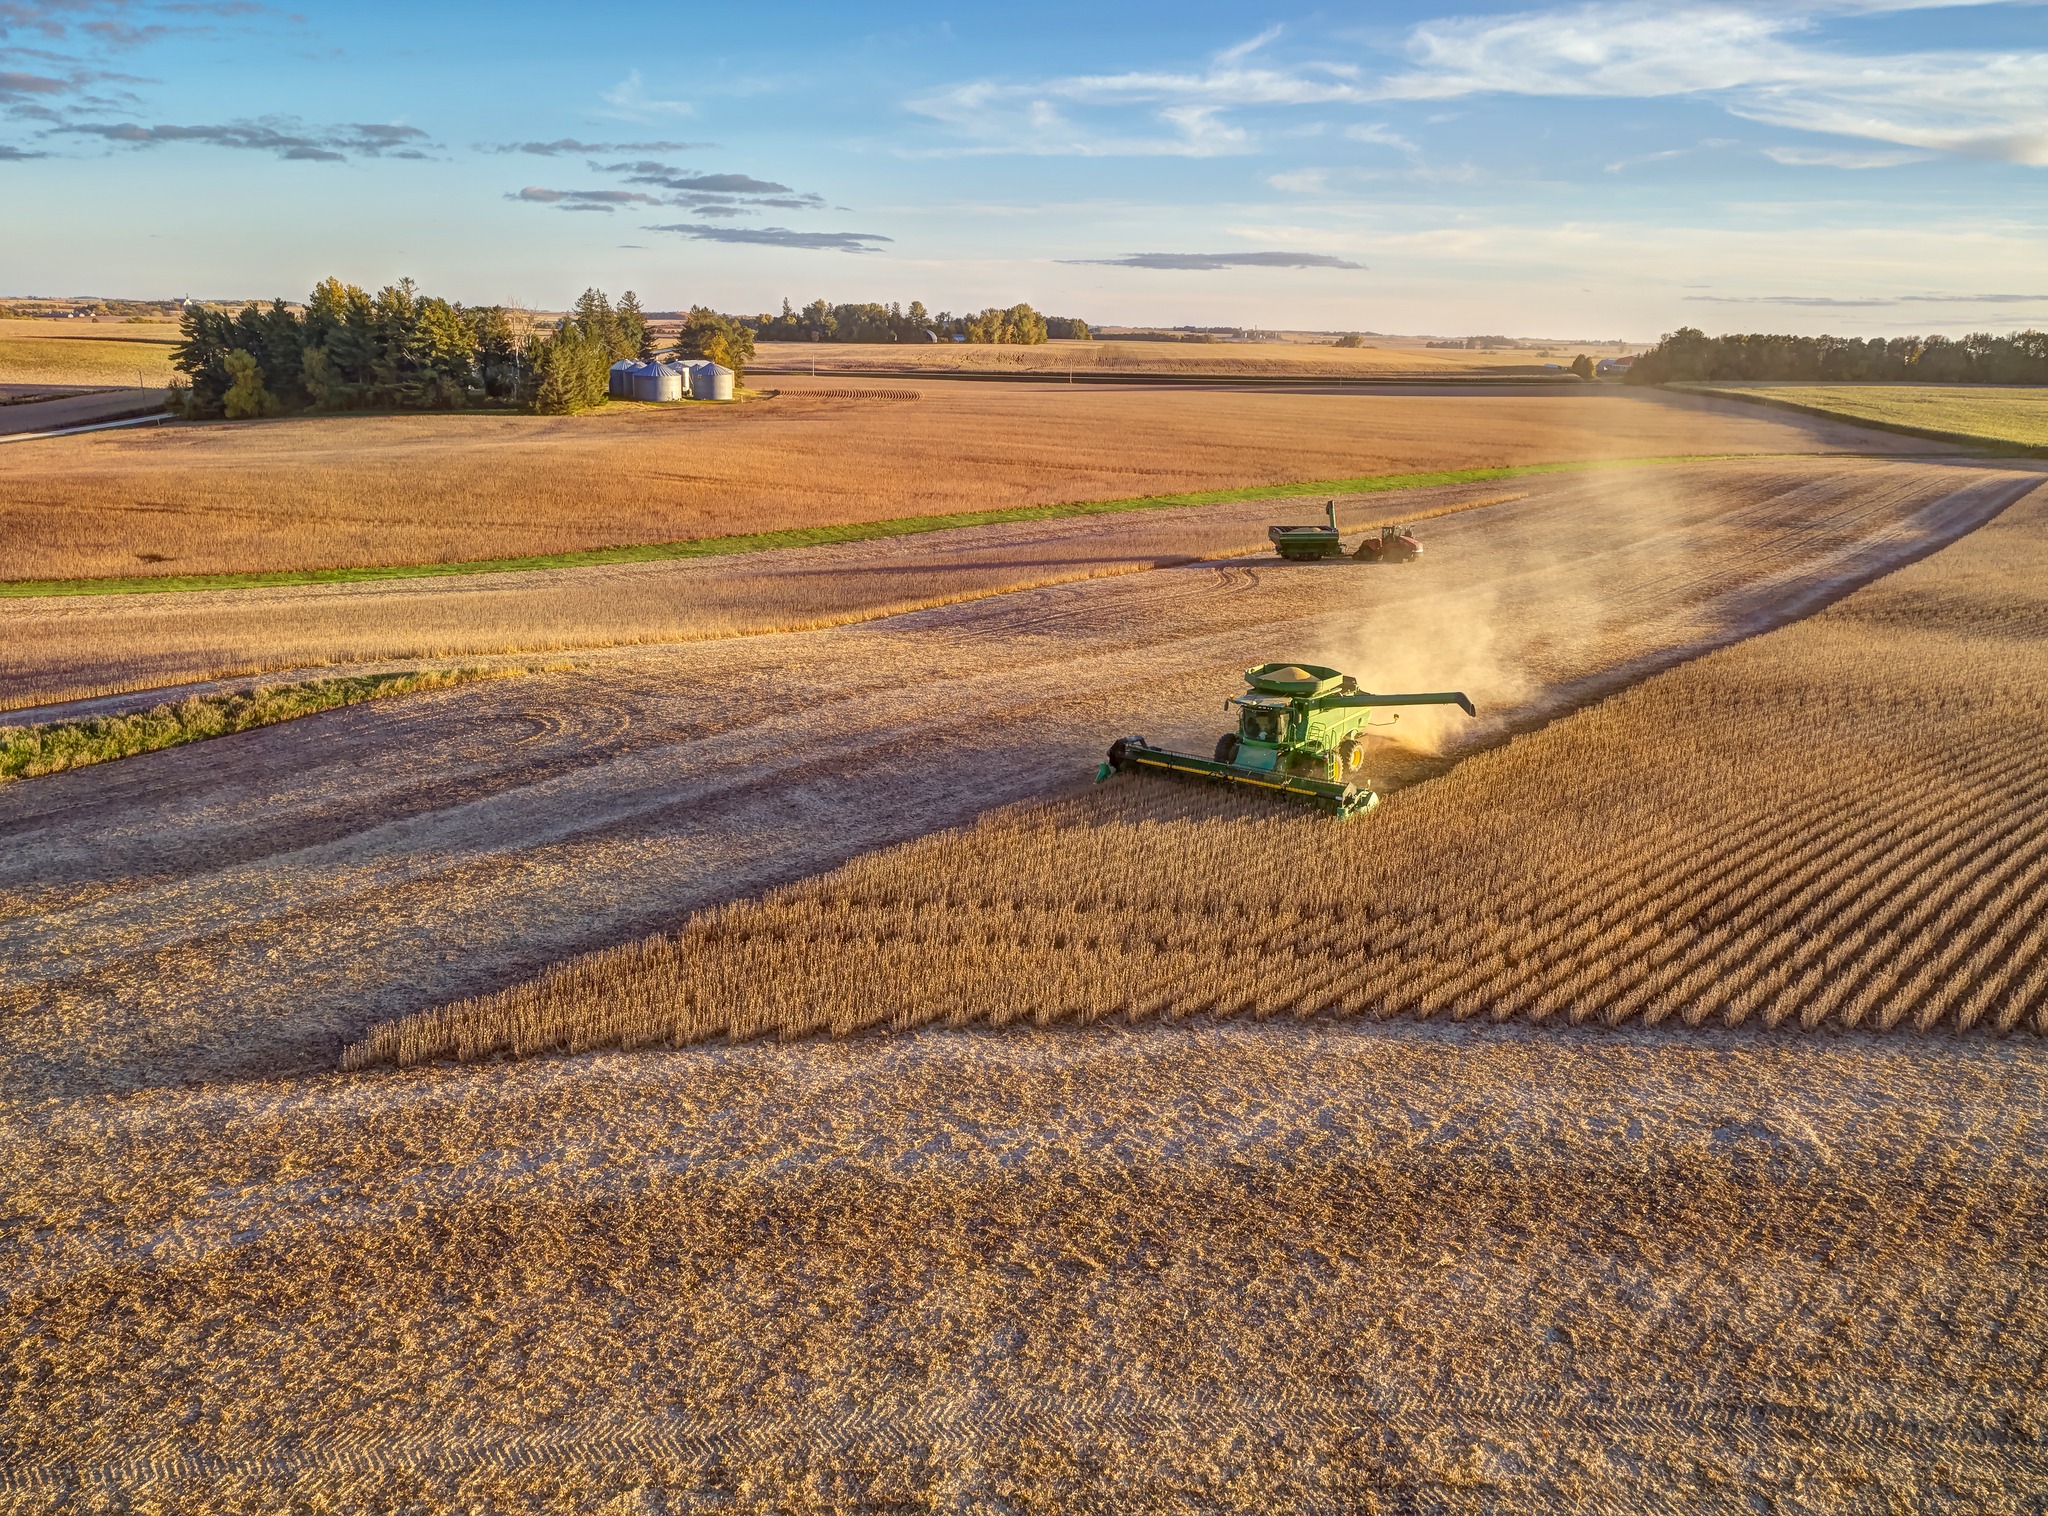 John Deere combine harvests a soybean field.